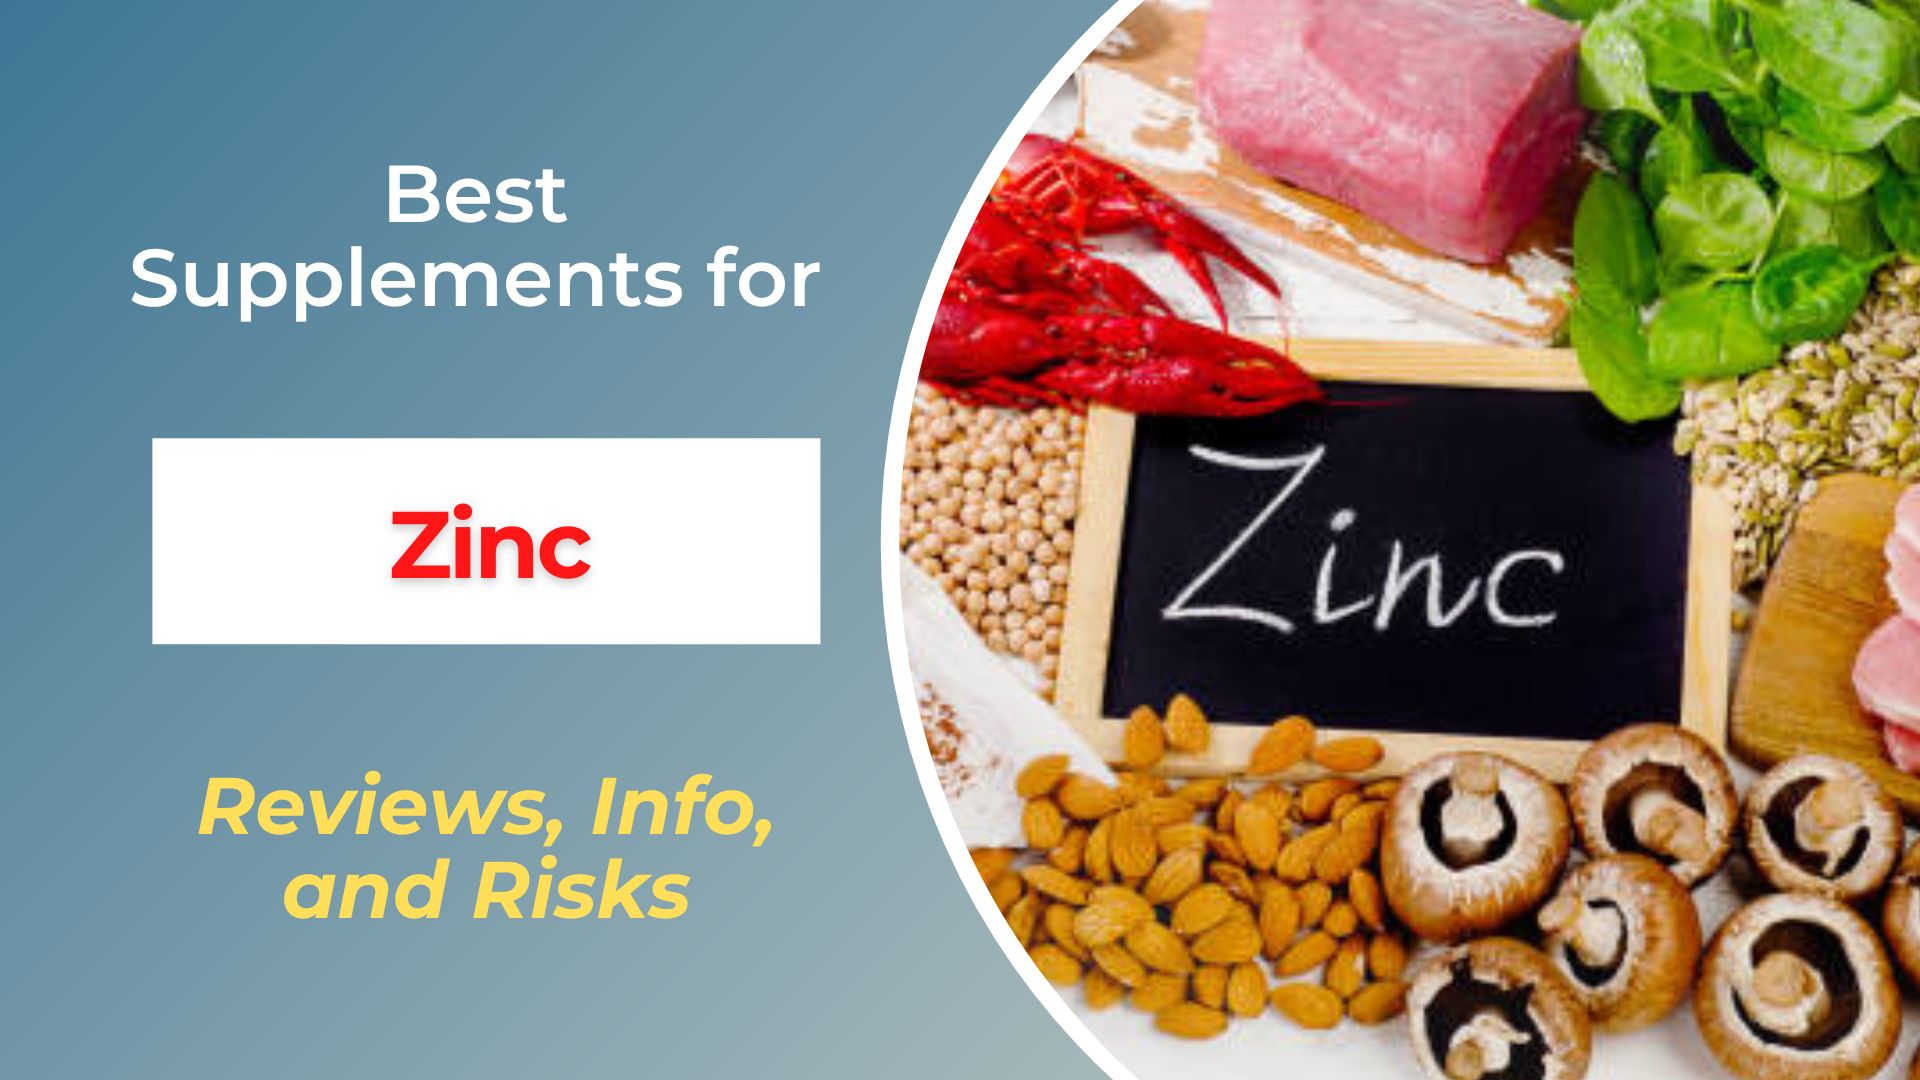 Best Supplements for Zinc